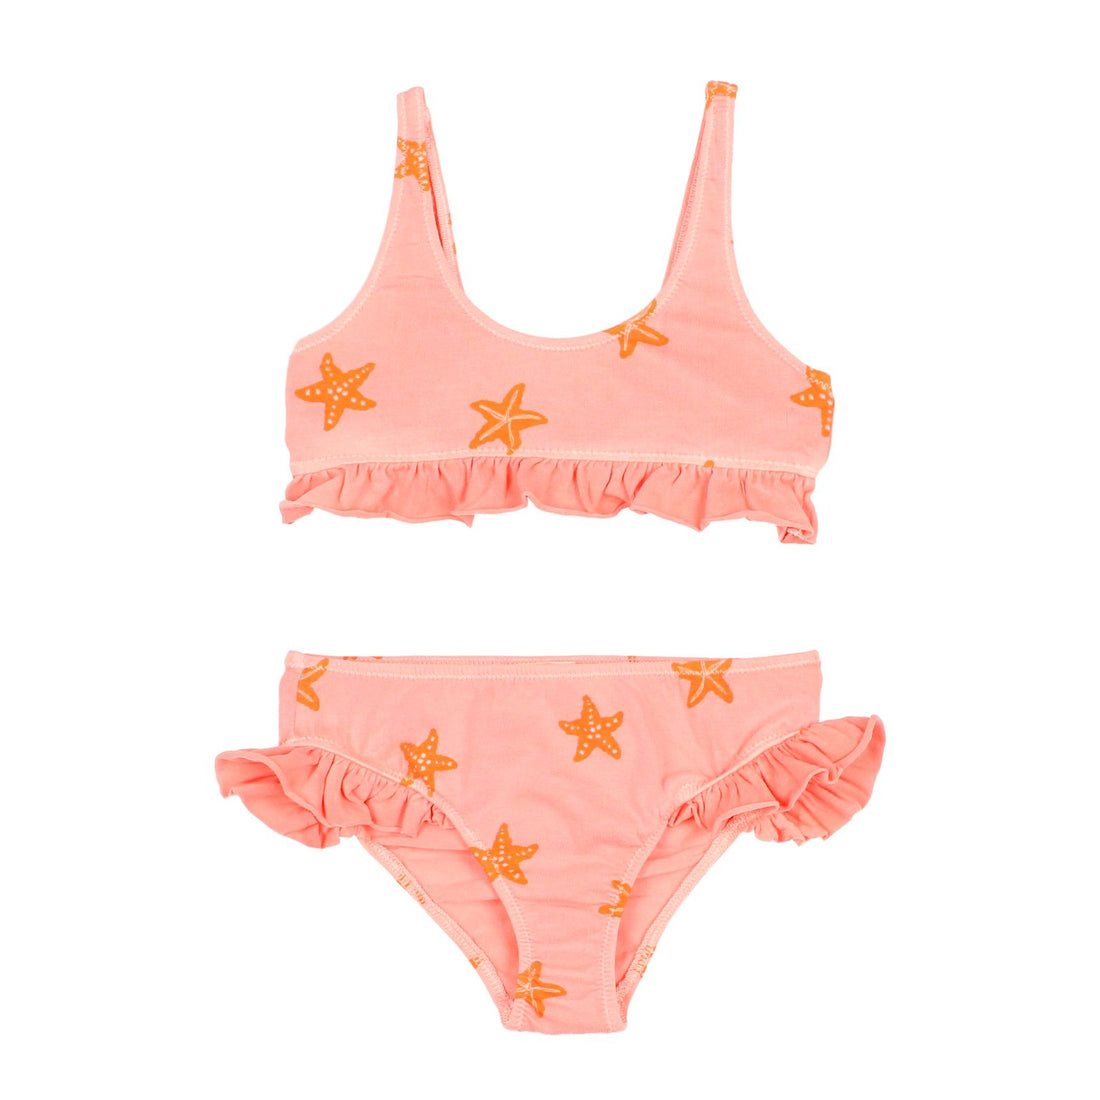 Buho - kids starfish bikini - tangerine